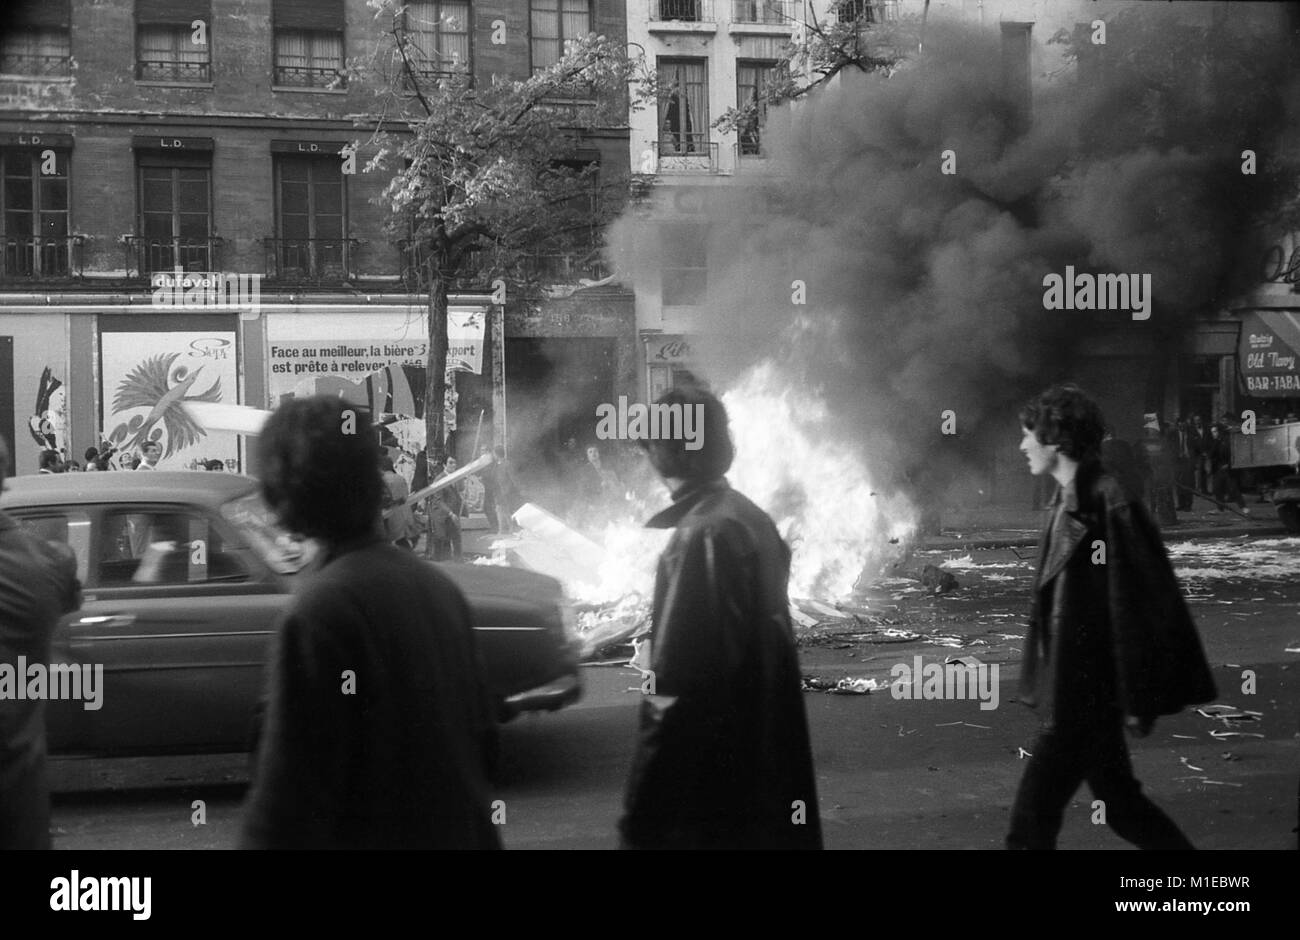 Philippe Gras / Le Pictorium - Mai 68 - 1968 - France / Ile-de-France (région) / Paris - Manifestants allumé un feu Boulevard Saint-Germain, 1968 Banque D'Images